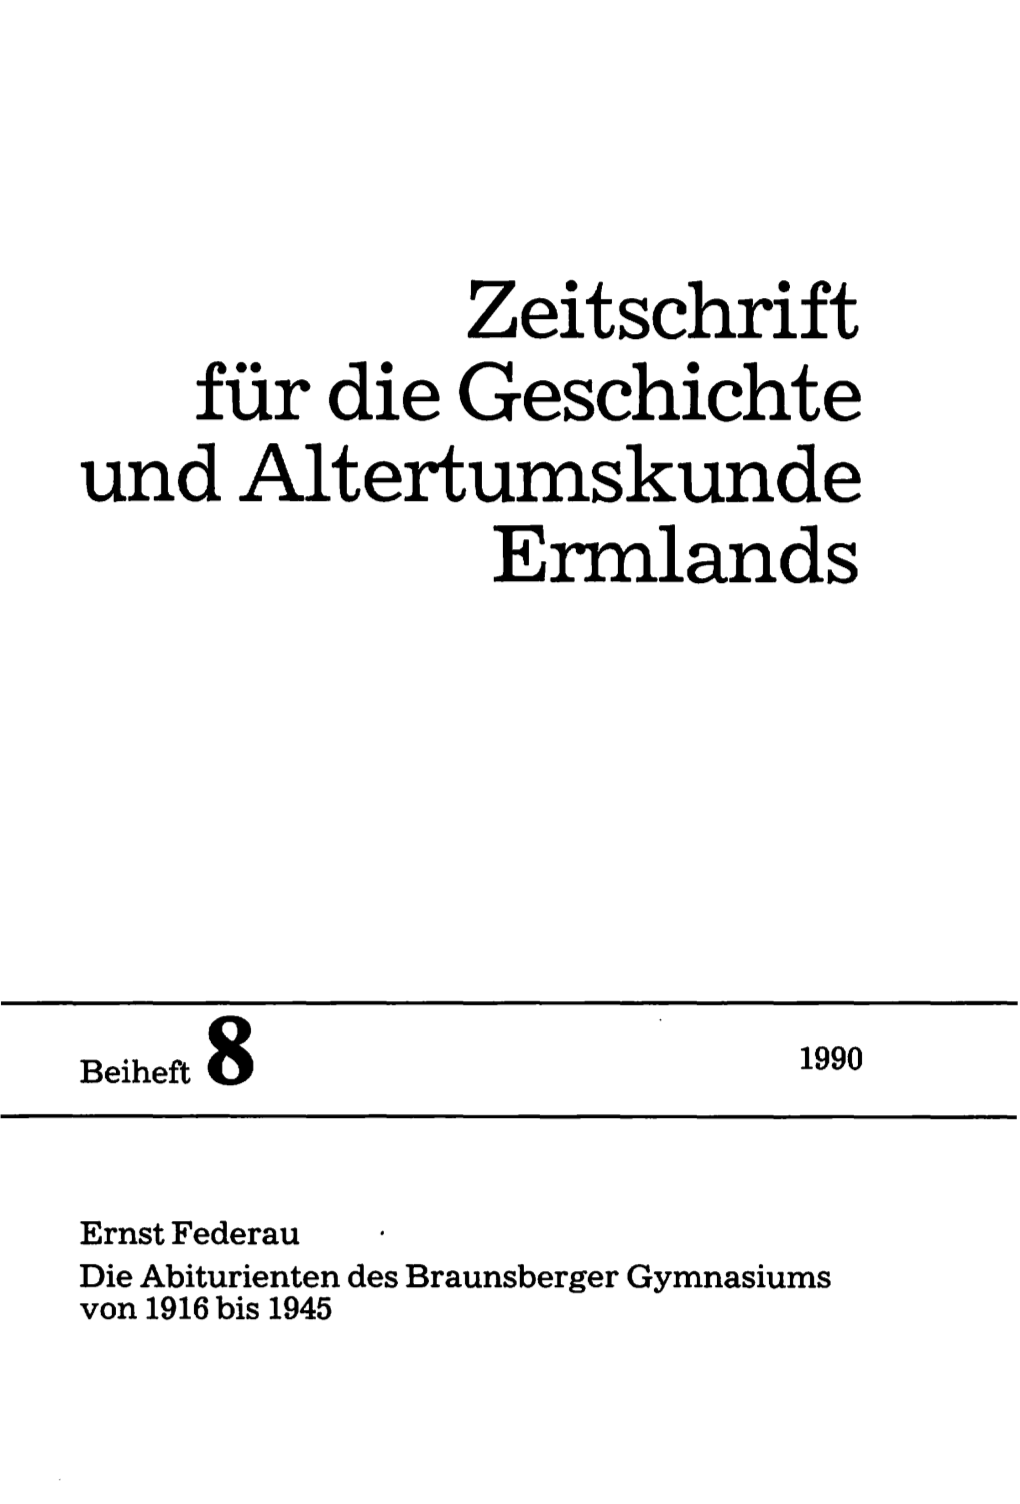 Zeitschrift Für Die Geschichte Und Alterstumskunde Ermlands, Beiheft 8, 1990